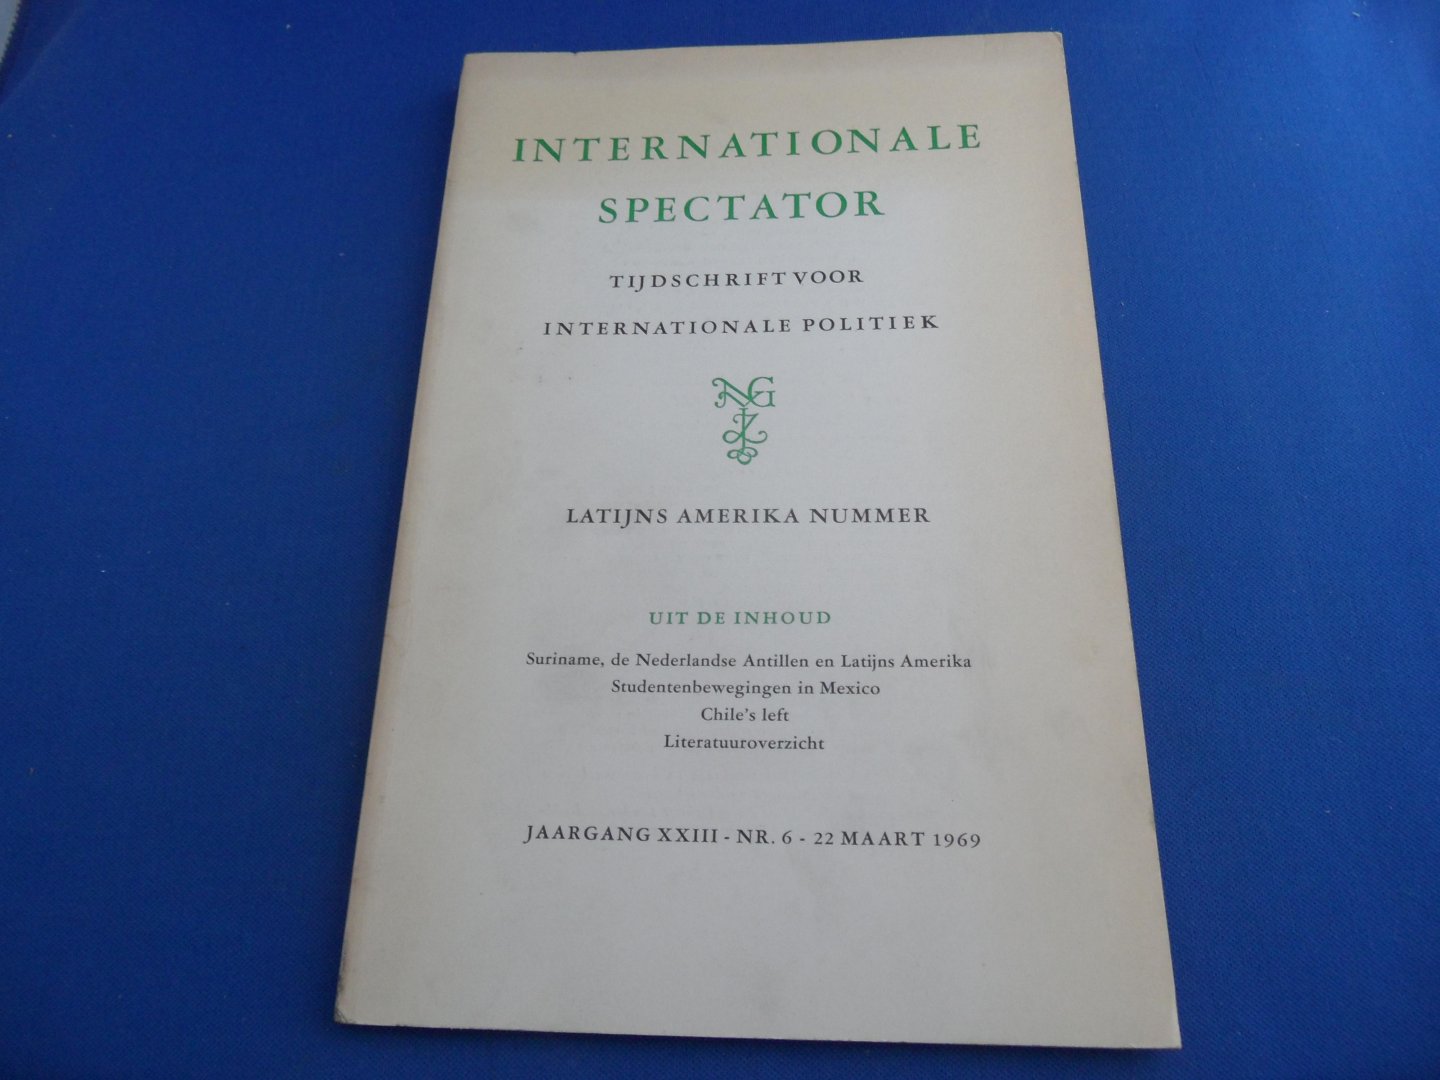  - Internationale Spectator - Tijdschrift voor internationale politiek -Latijns Amerika nummer jaargang XXIII nr.6 1969